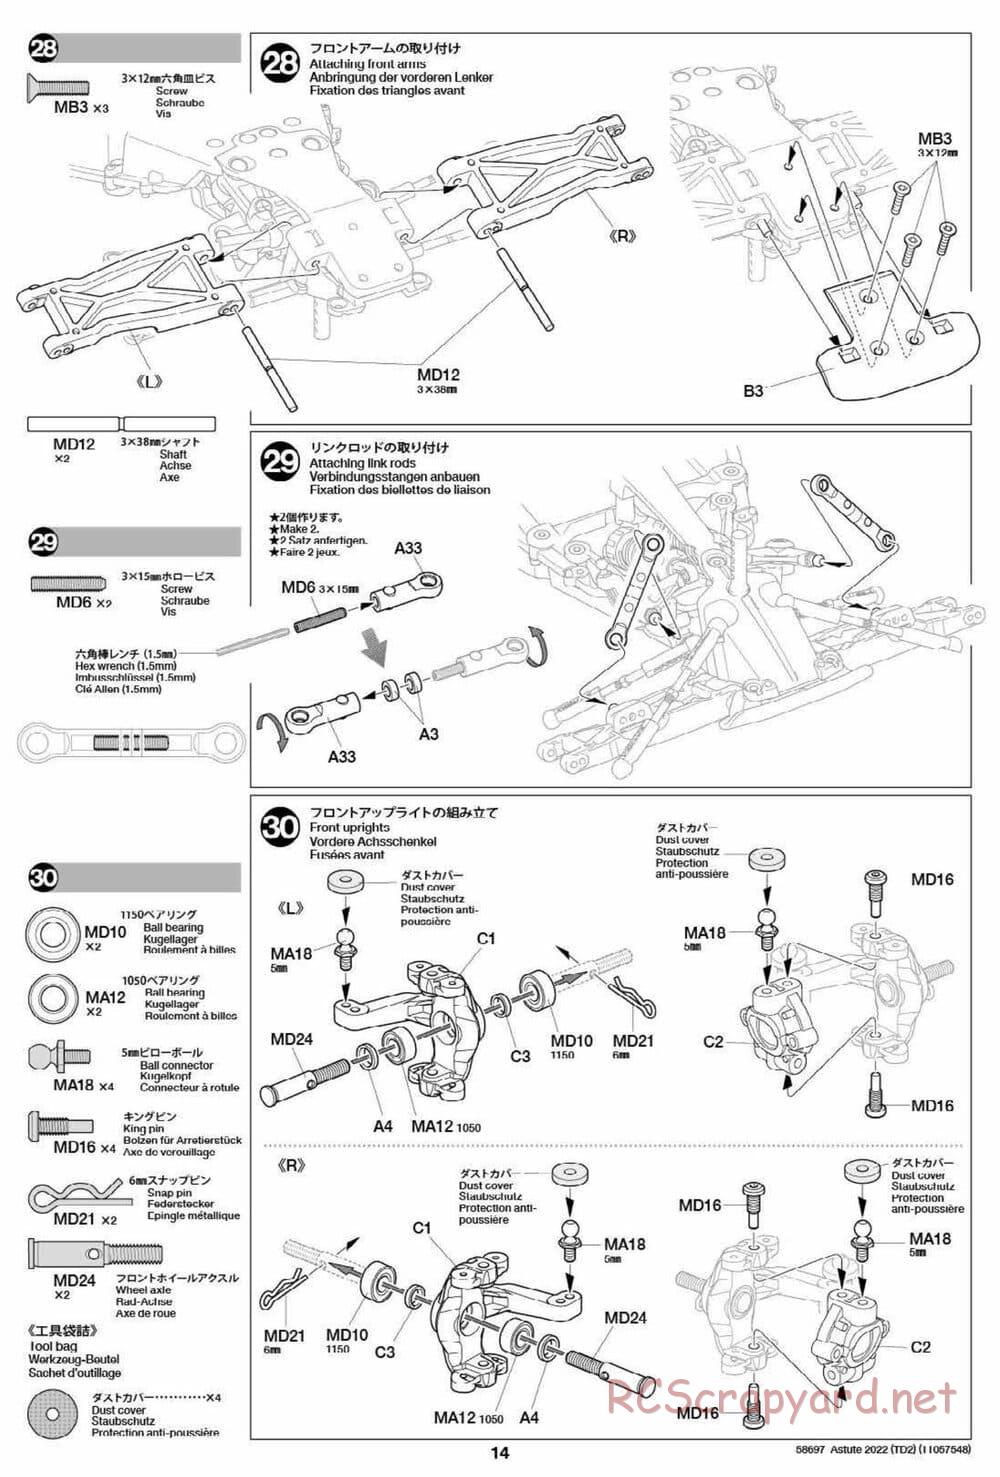 Tamiya - Astute 2022 - TD2 Chassis - Manual - Page 14